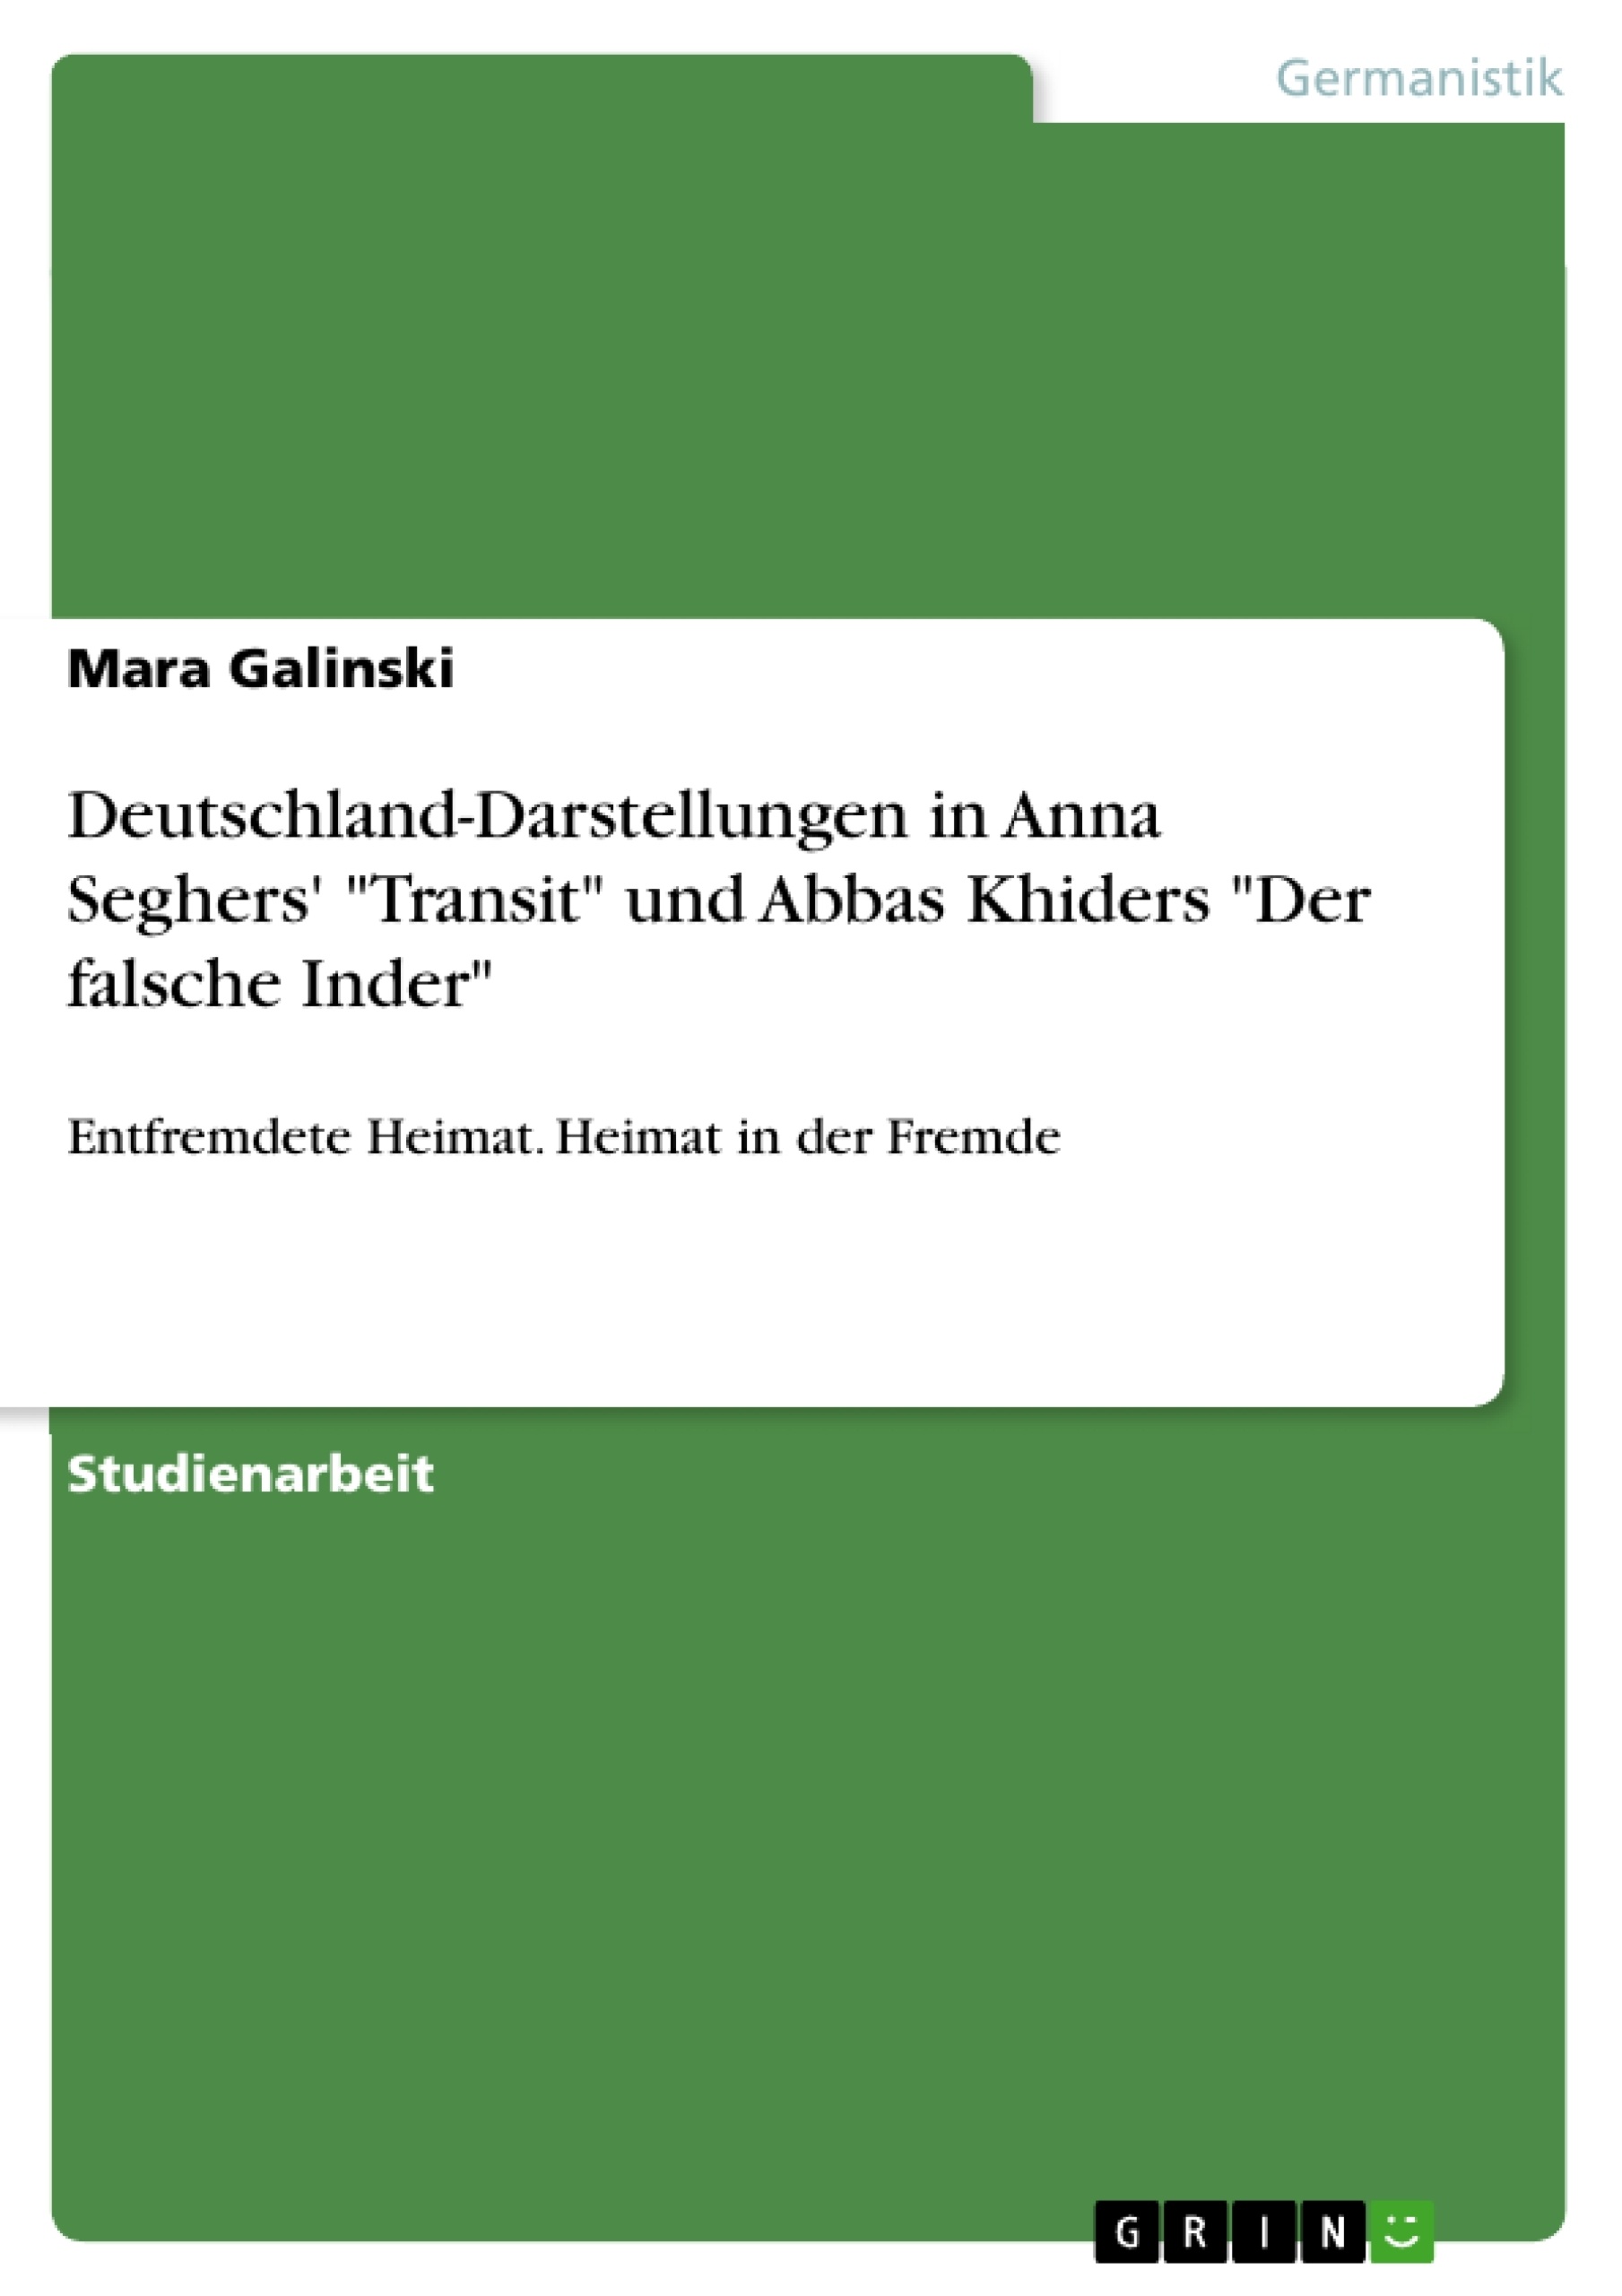 Titre: Deutschland-Darstellungen in Anna Seghers' "Transit" und Abbas Khiders "Der falsche Inder"